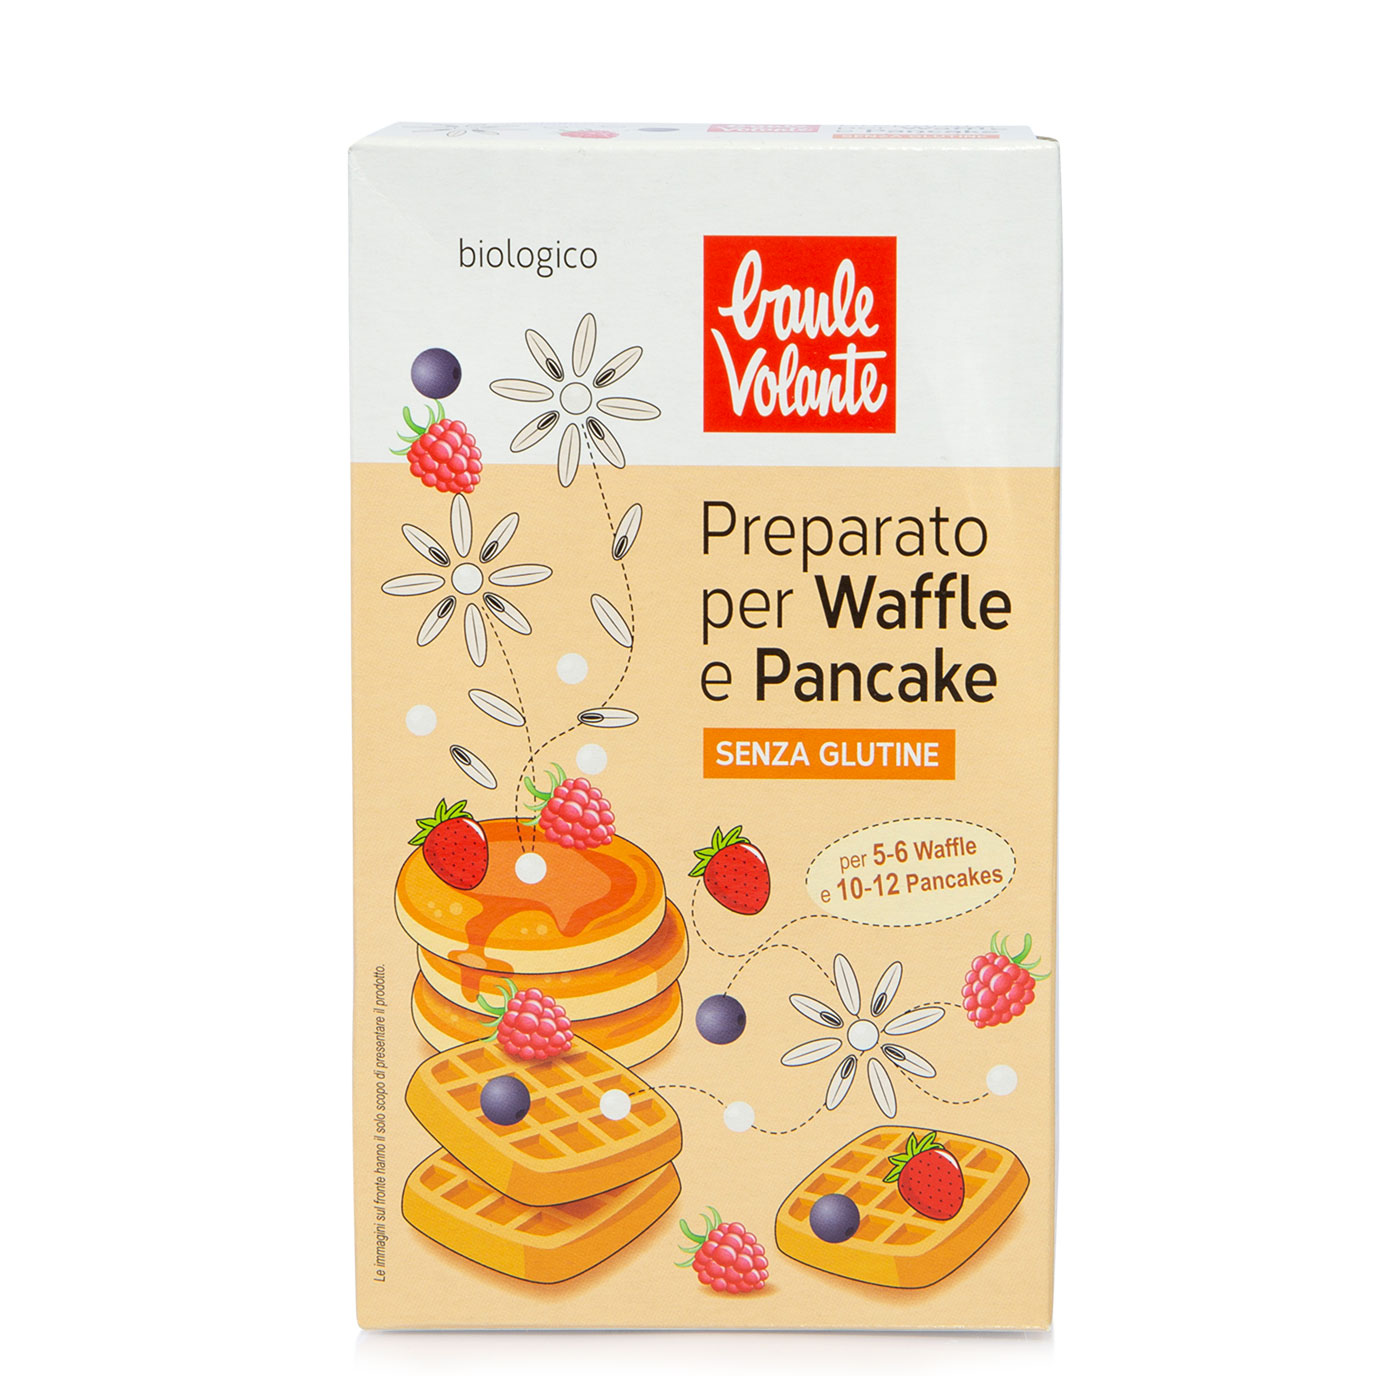 Preparato per waffle e pancake bio senza glutine 200g Baule Volante